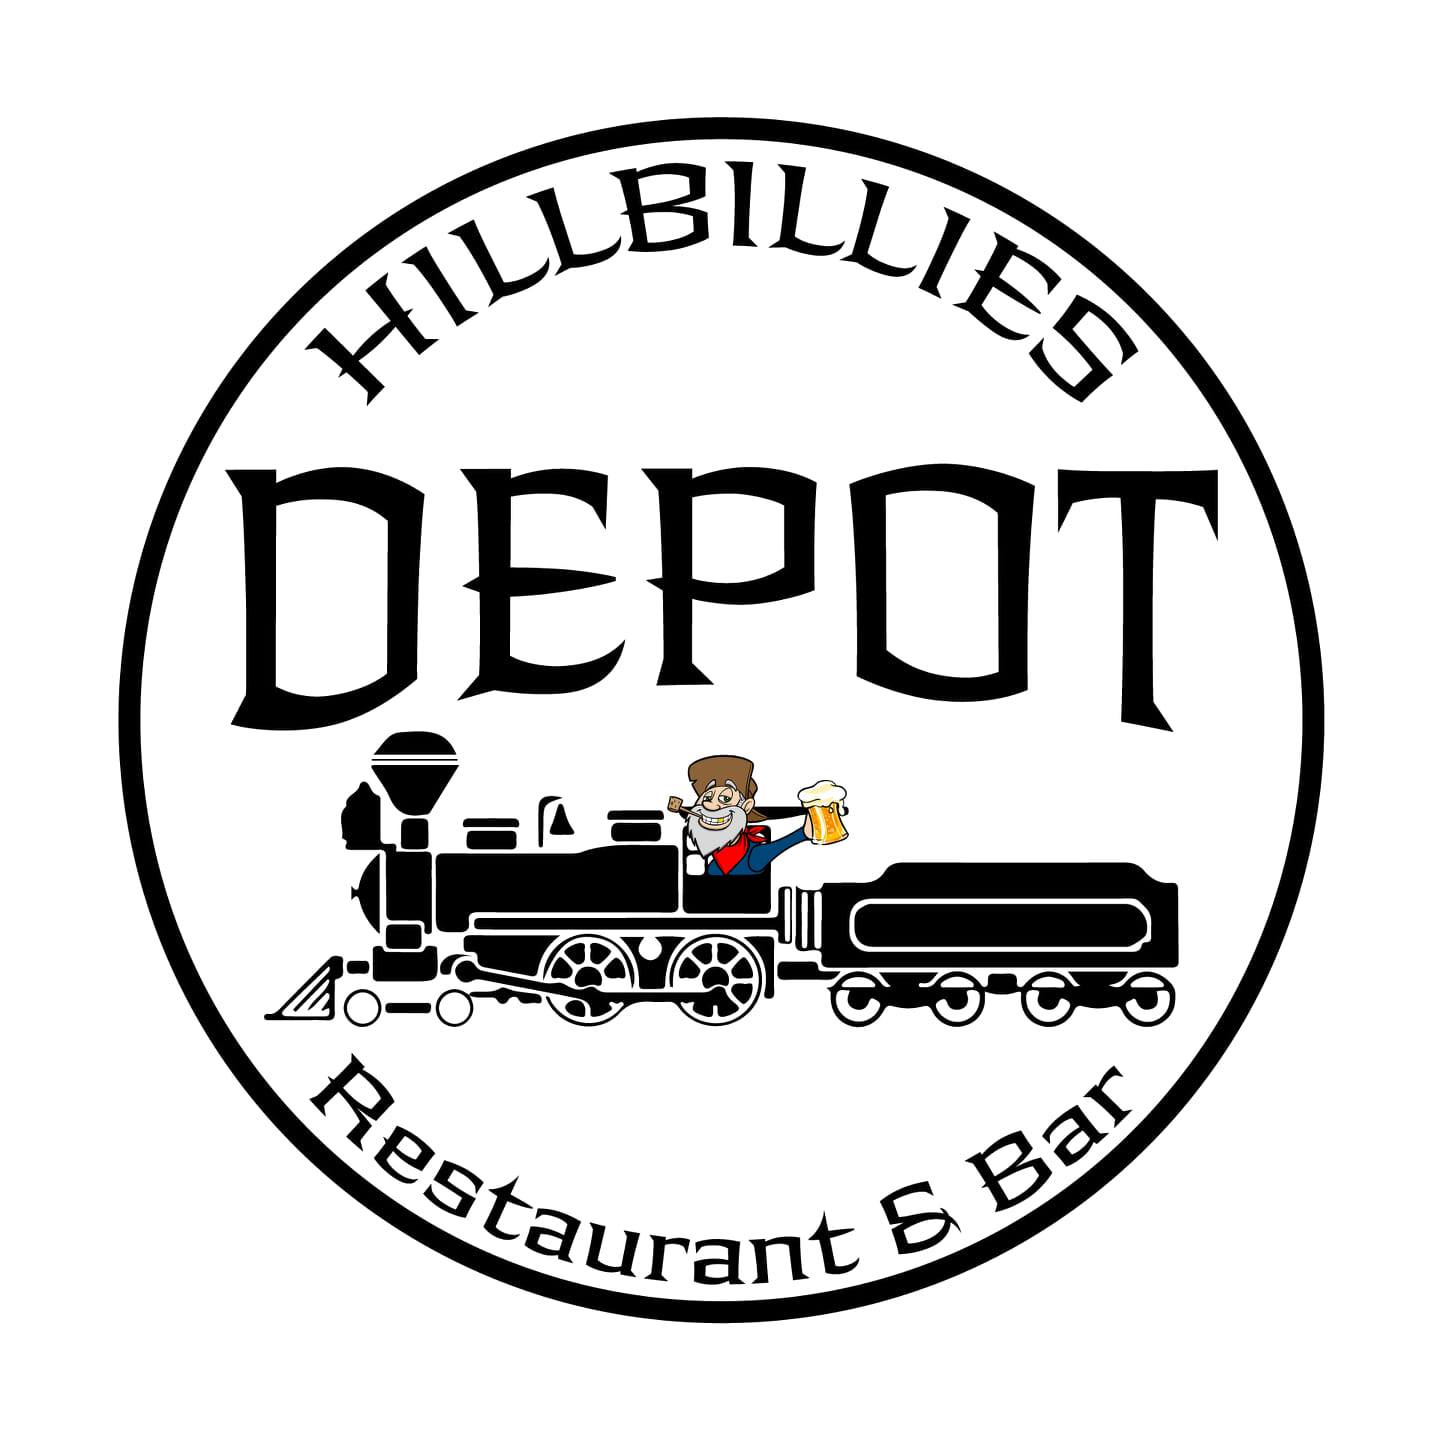 Hillbillies Depot Restaurant & Bar Logo